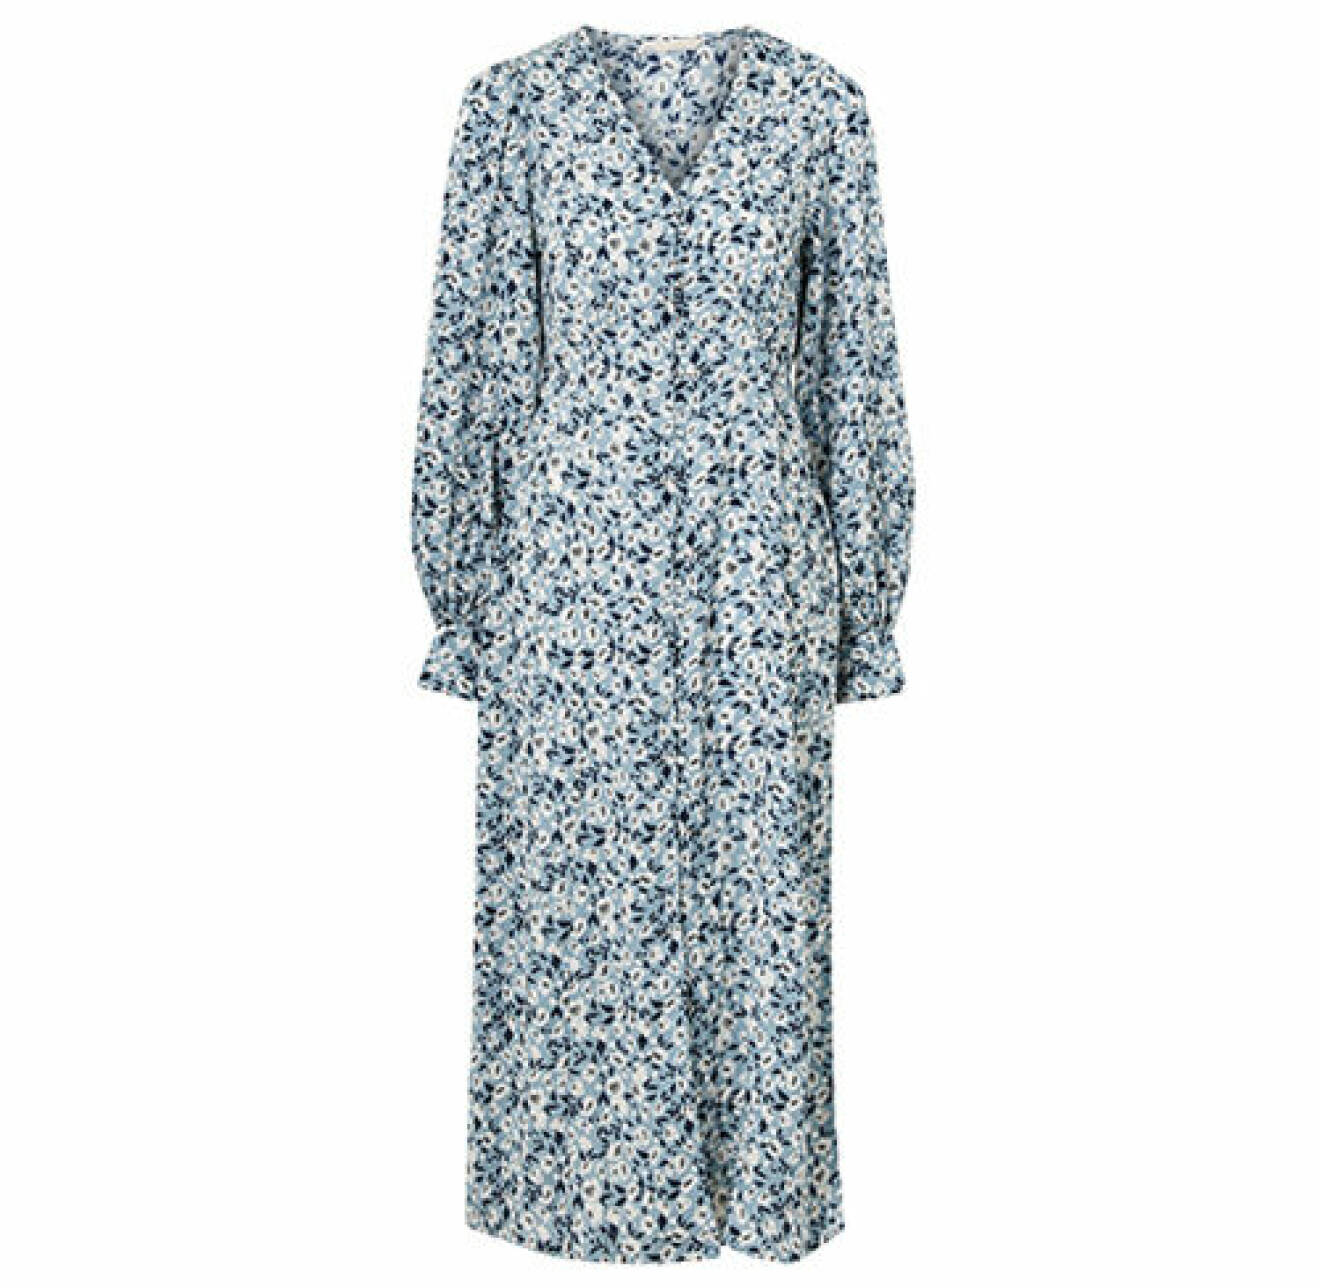 Blå blommig klänning med knappar från Ellos